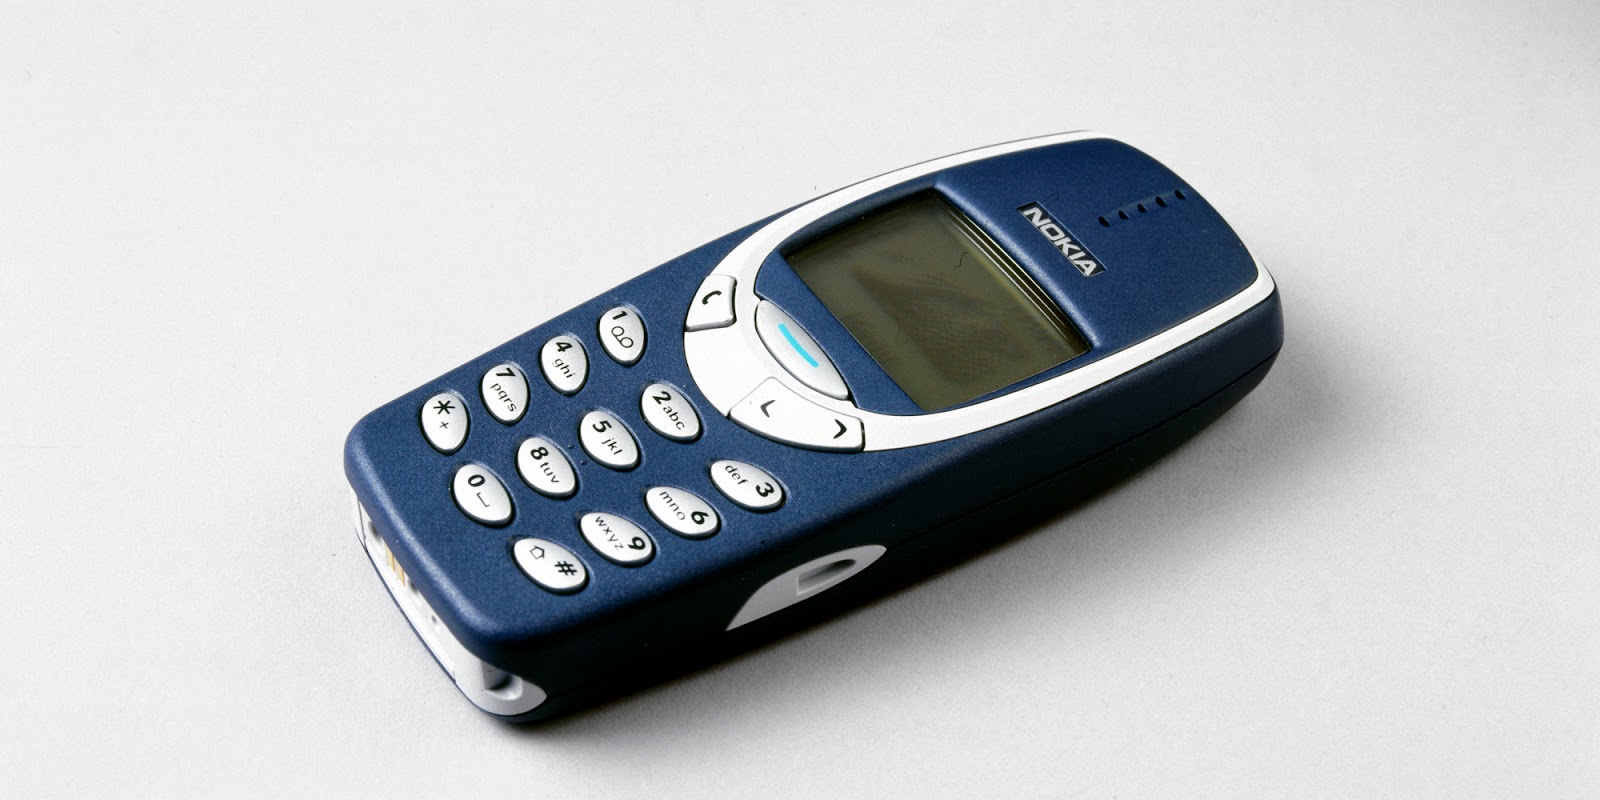 El Nokia 3310, uno de los móviles más icónicos.